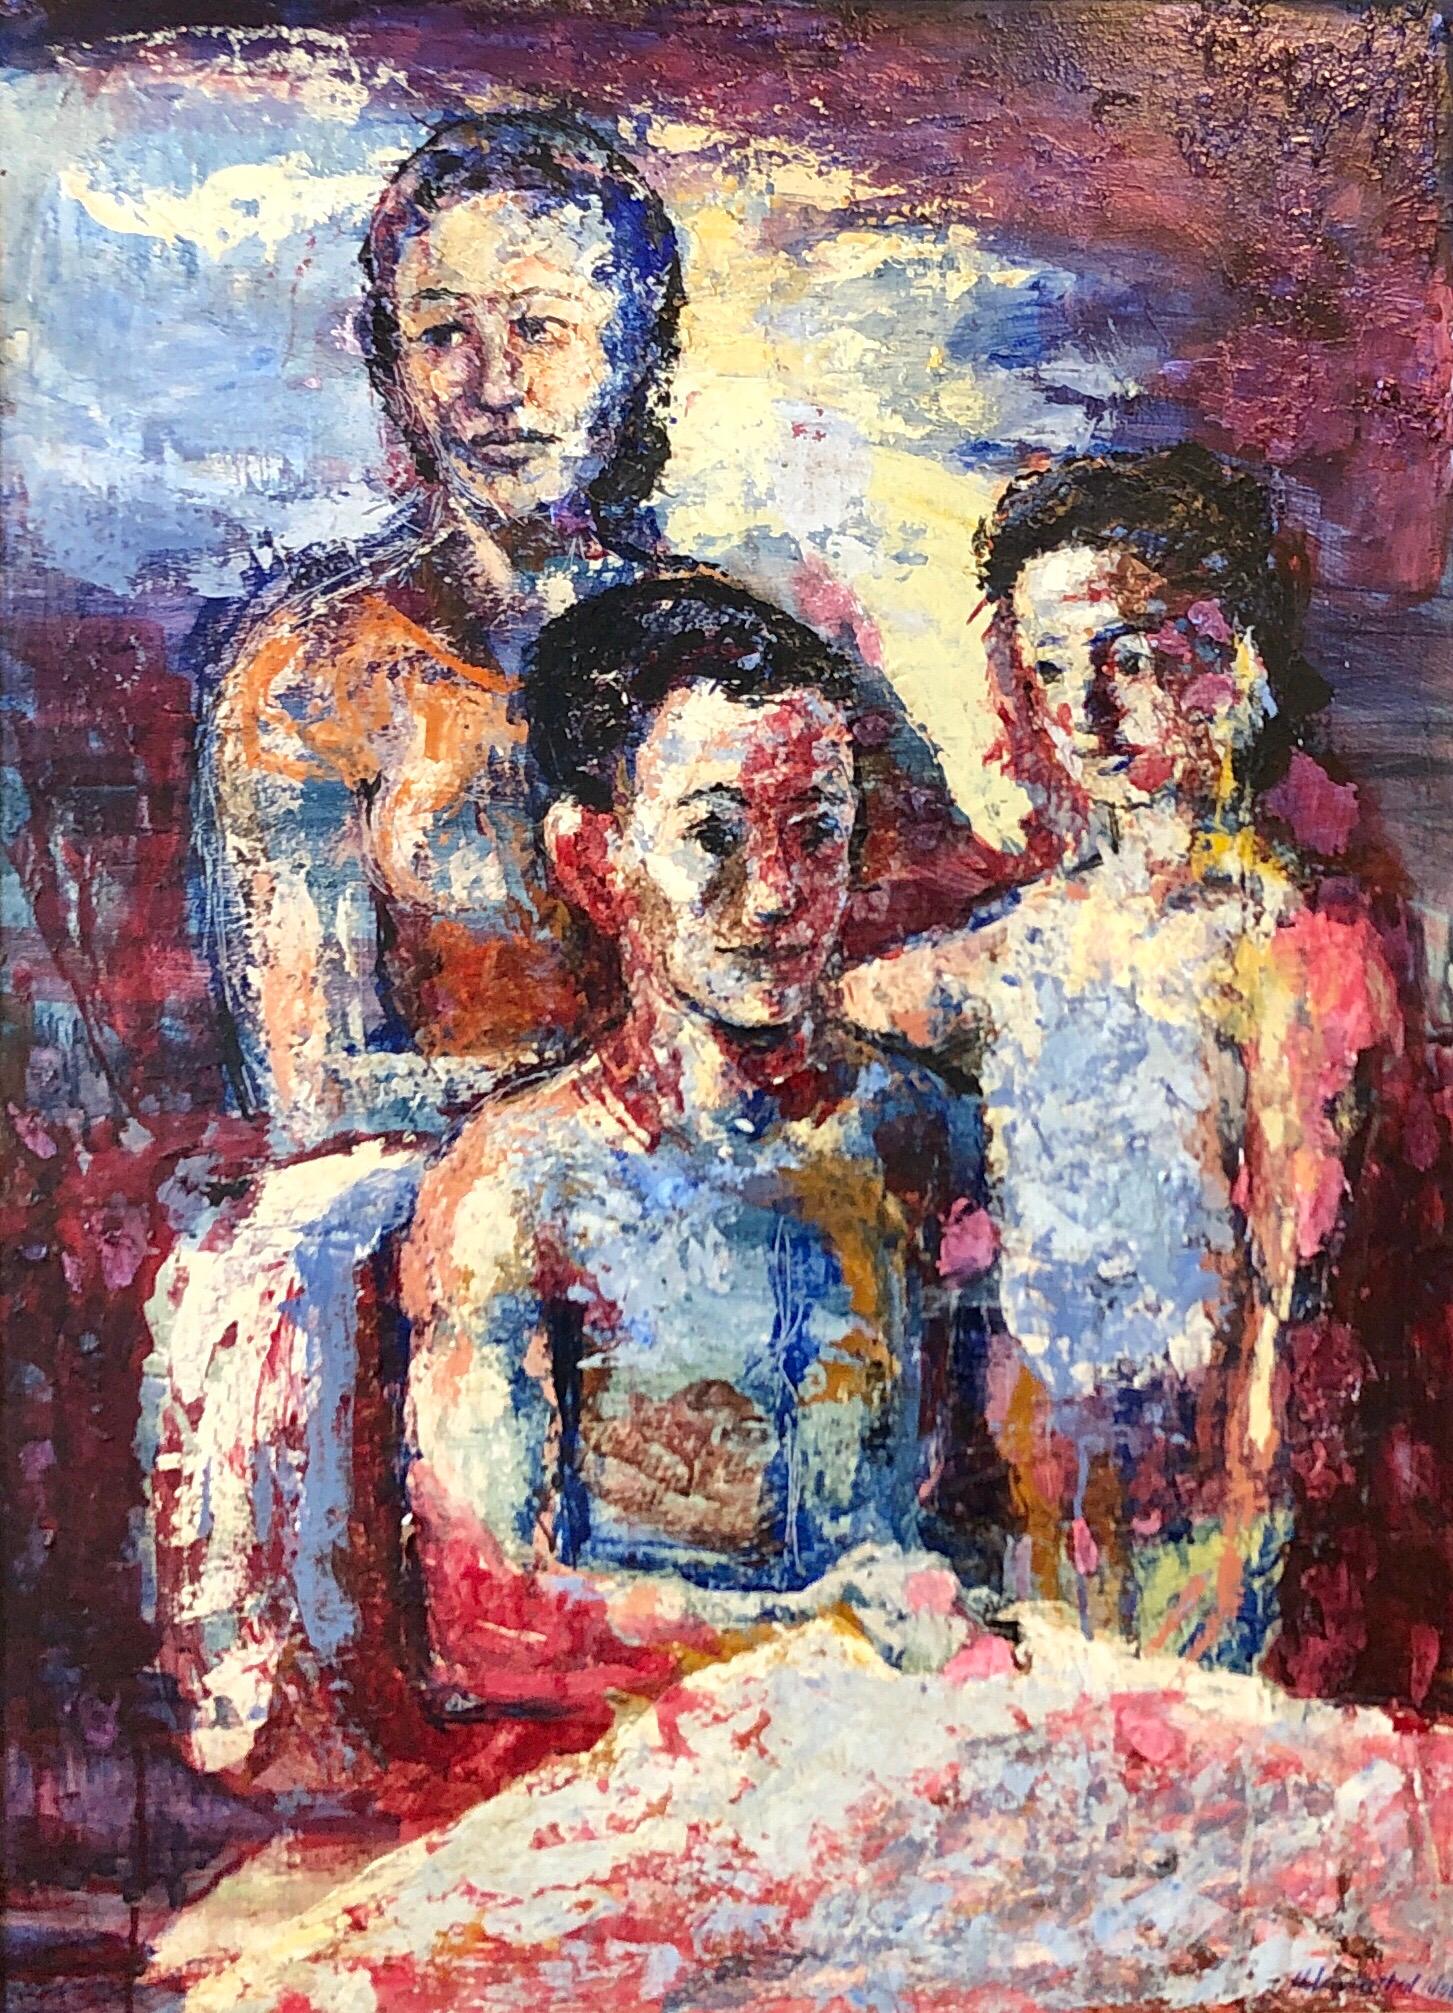 Portrait de famille surréaliste, grande peinture à l'huile surréaliste Mère, enfants, néo-surréalisme - Painting de Hank Laventhol